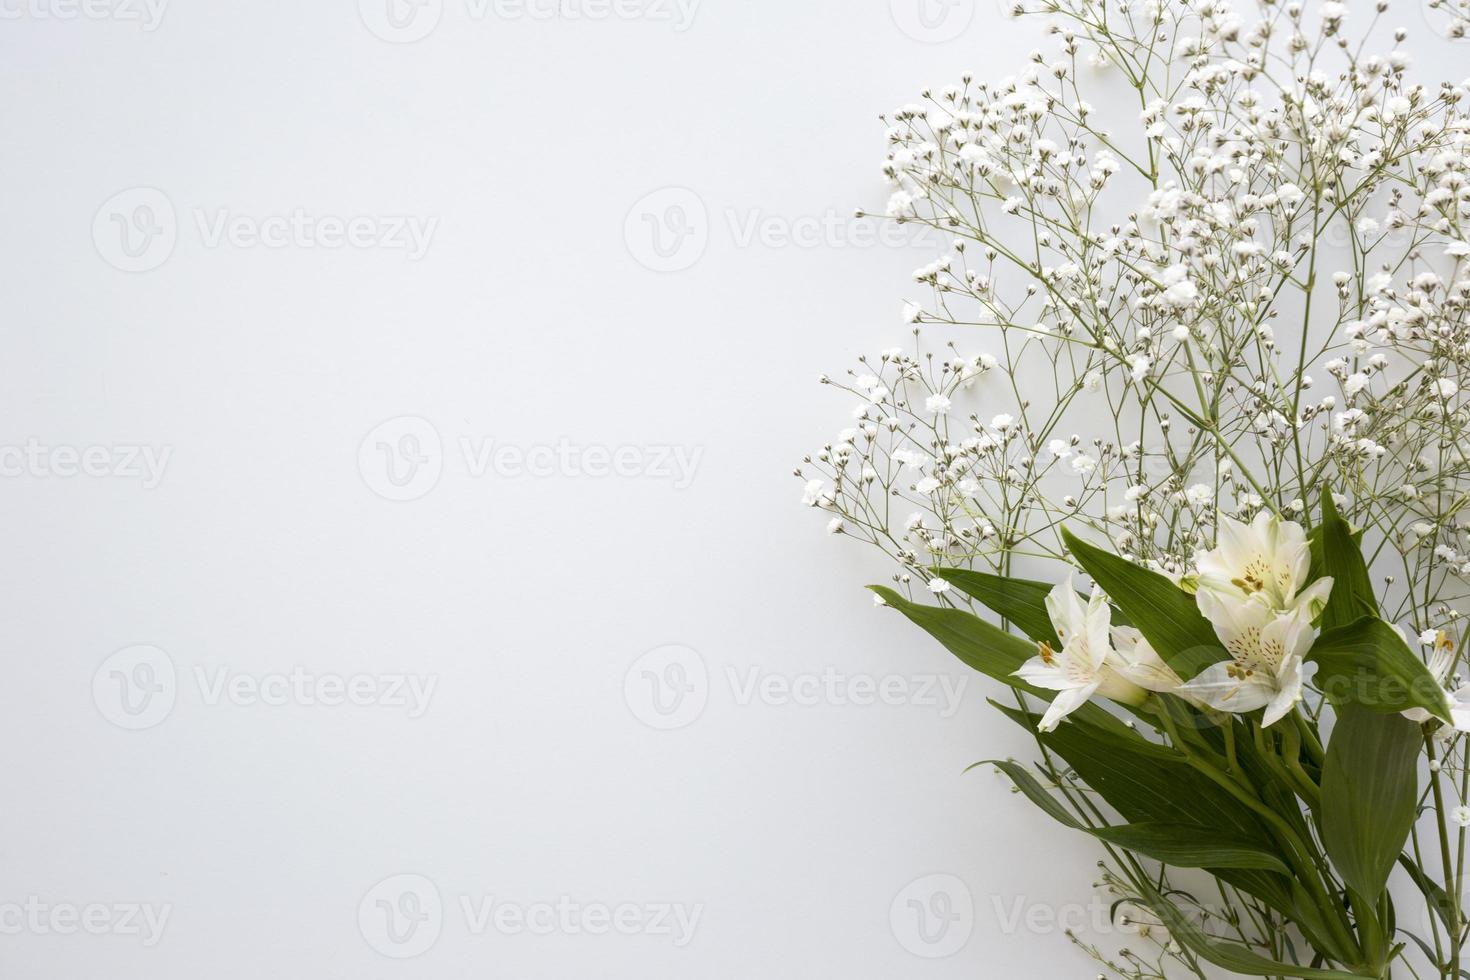 ovanifrån barnets andetag och vita liljor på vit bakgrund foto